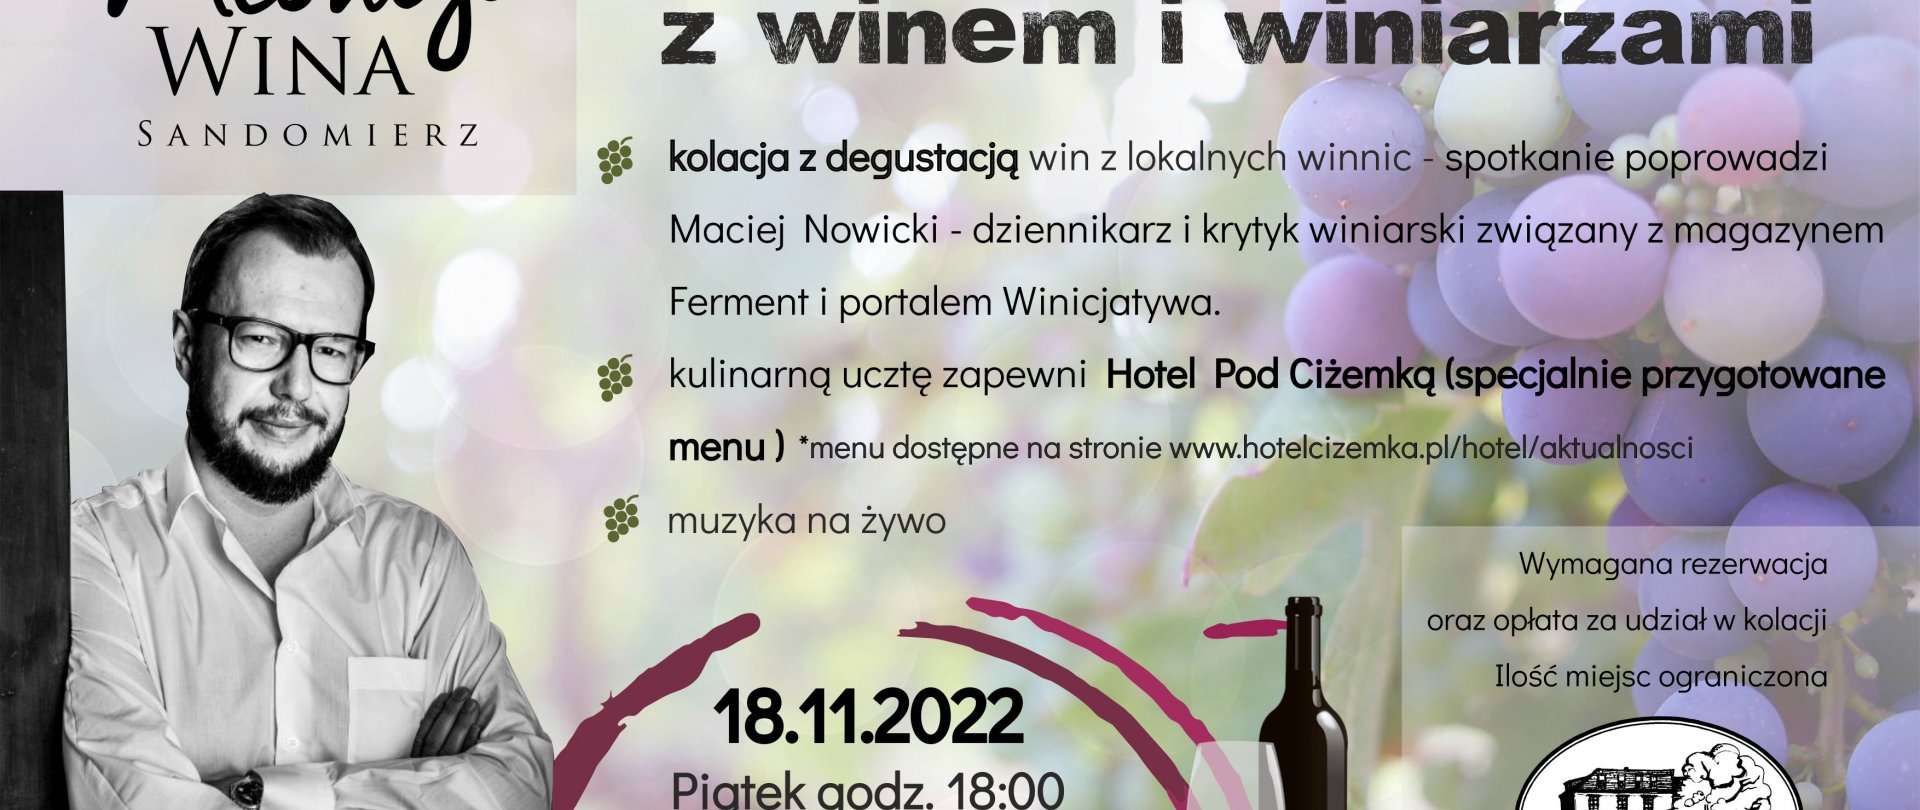 Święto Młodego Wina - kolacja degustacyjna 18.11.2022